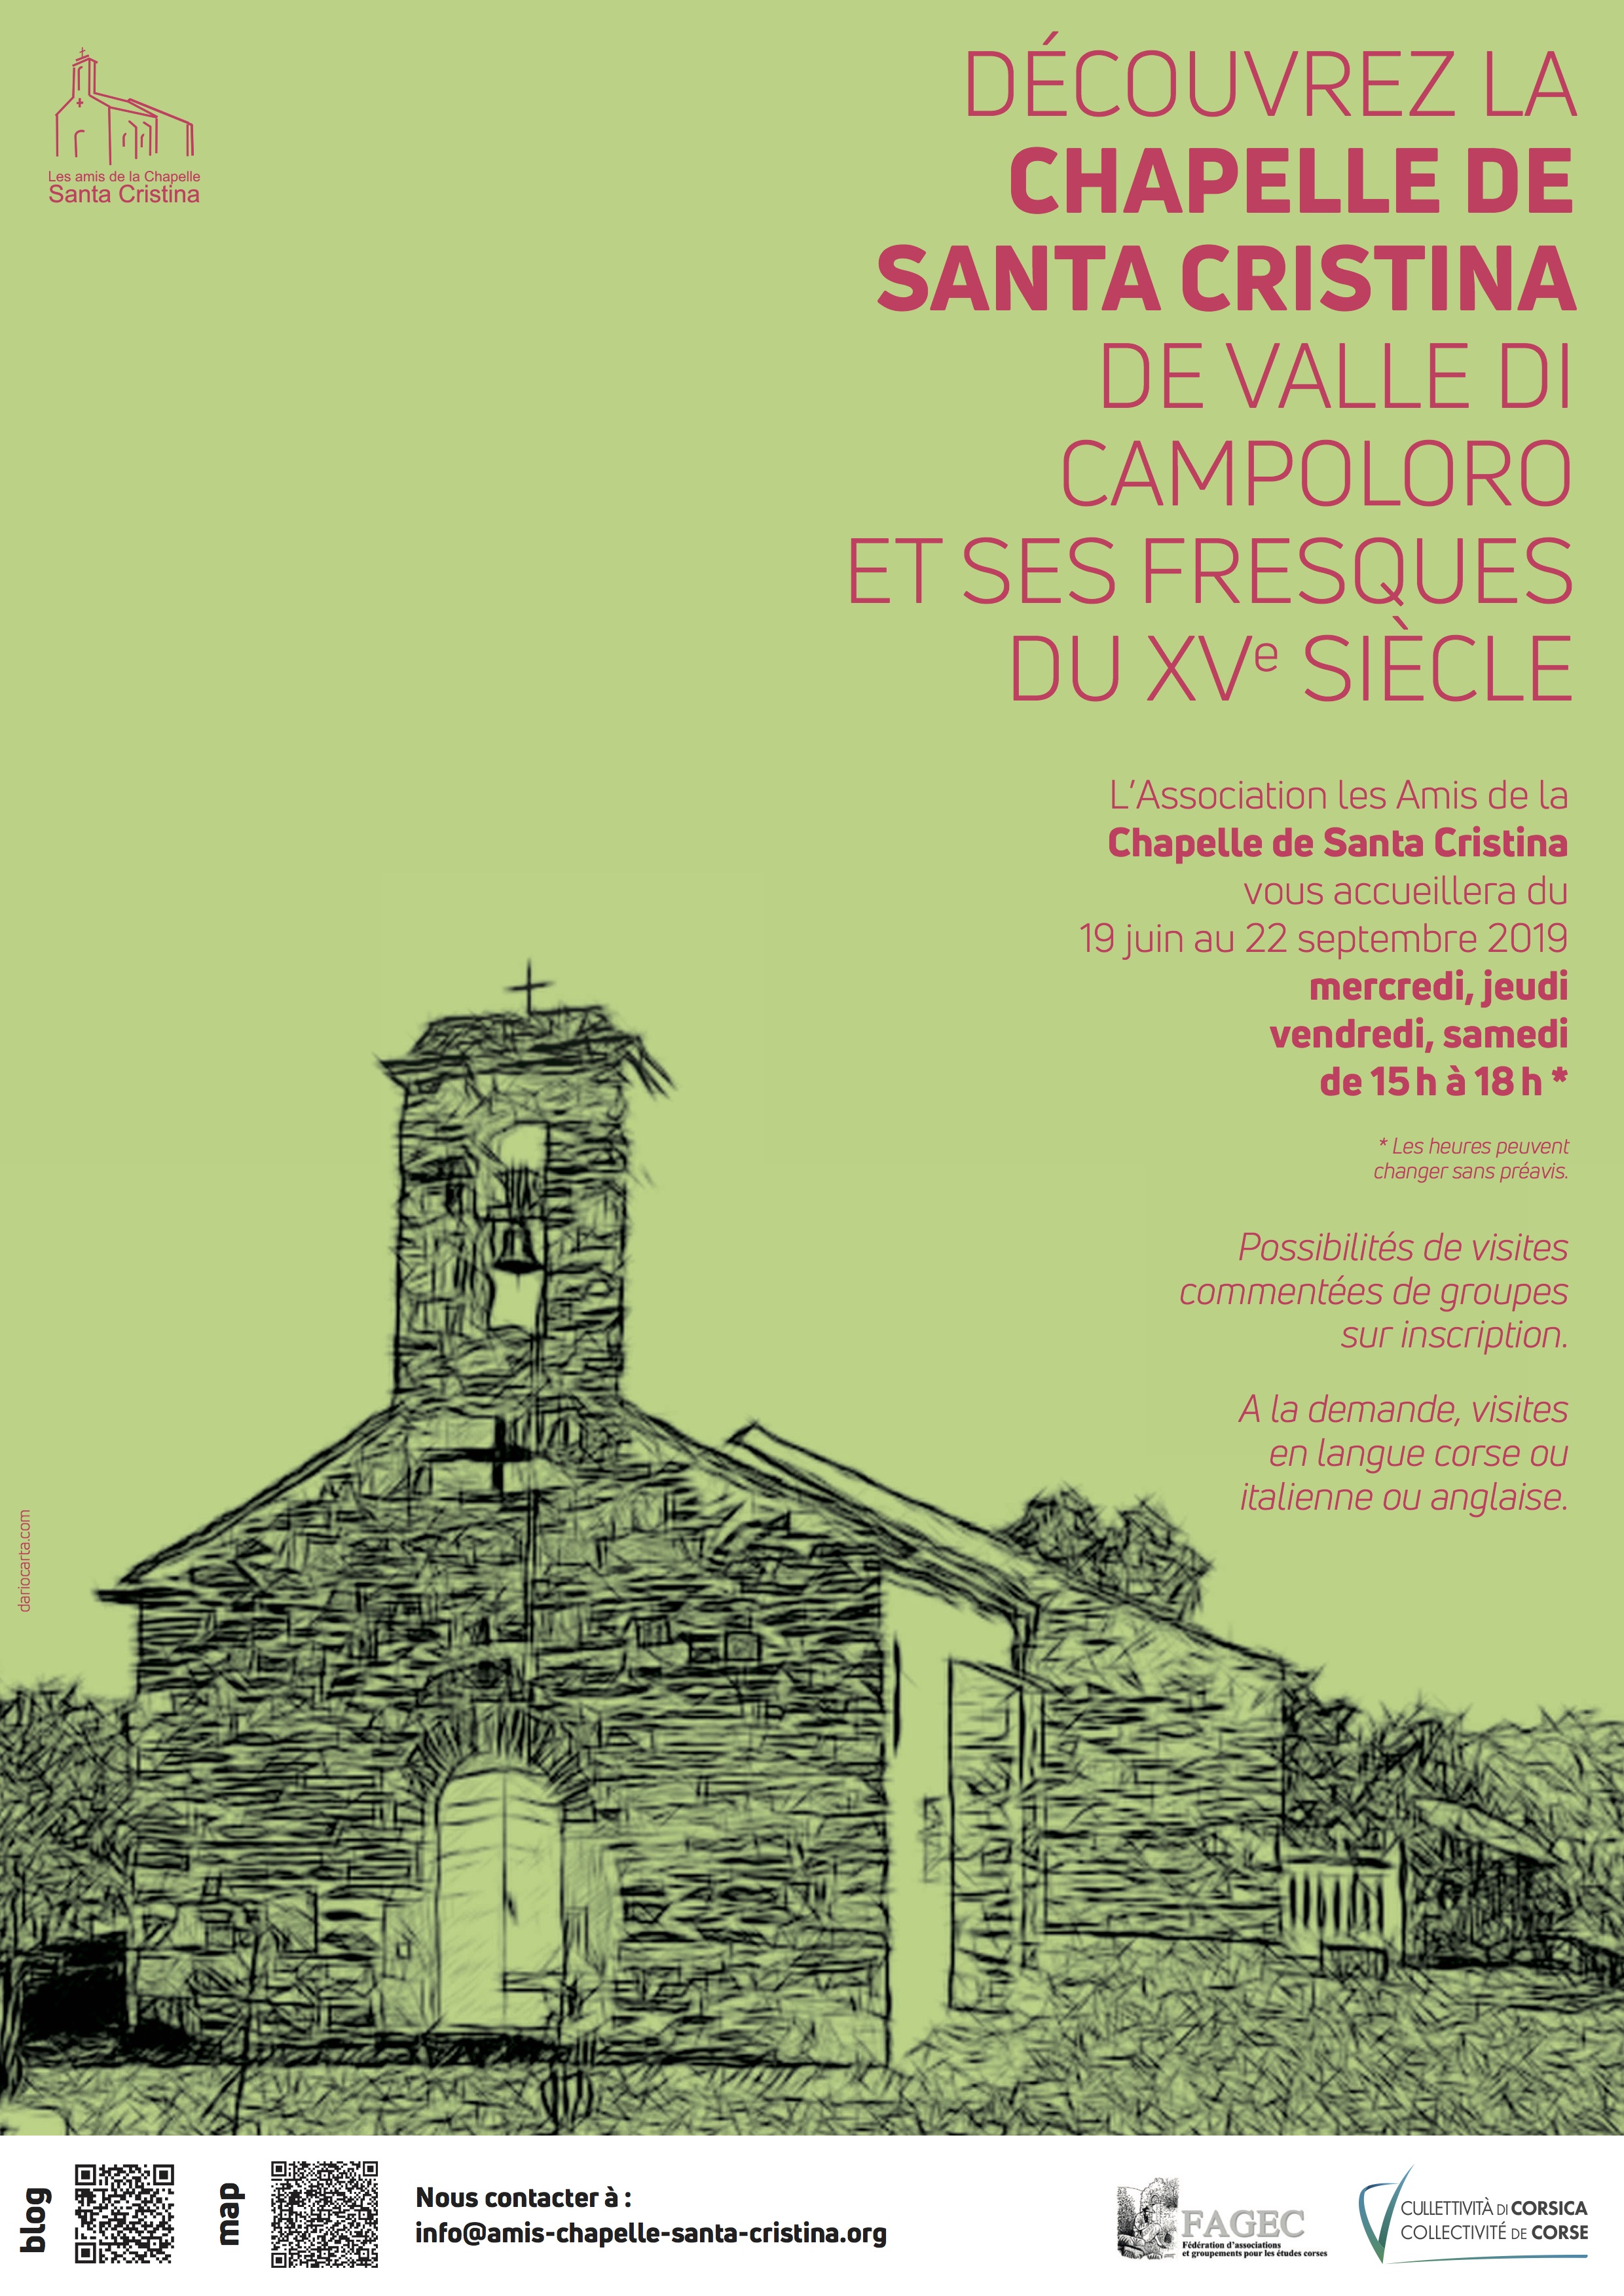 Découvrez la Chapelle de Santa Cristina de Valle di Campoloro et ses fresques 